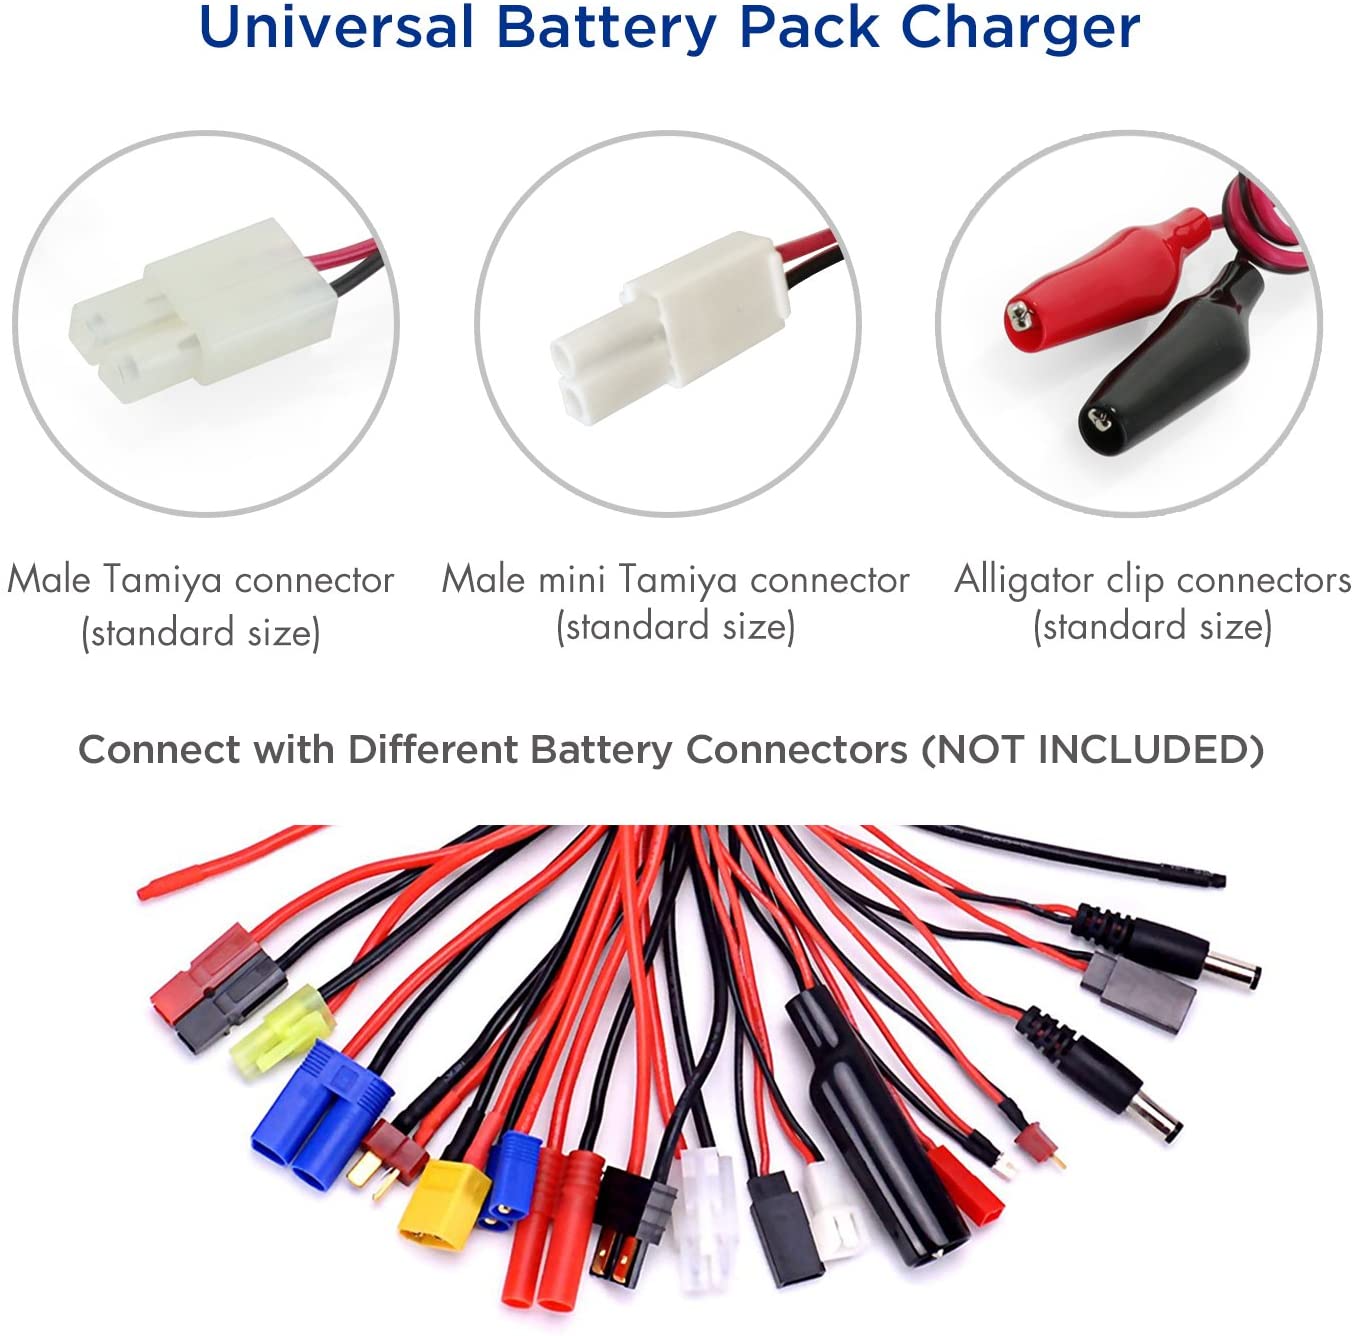 Tenergy Universal Smart Charger For Nimh/Nicd Battery Packs (6V - 12V)